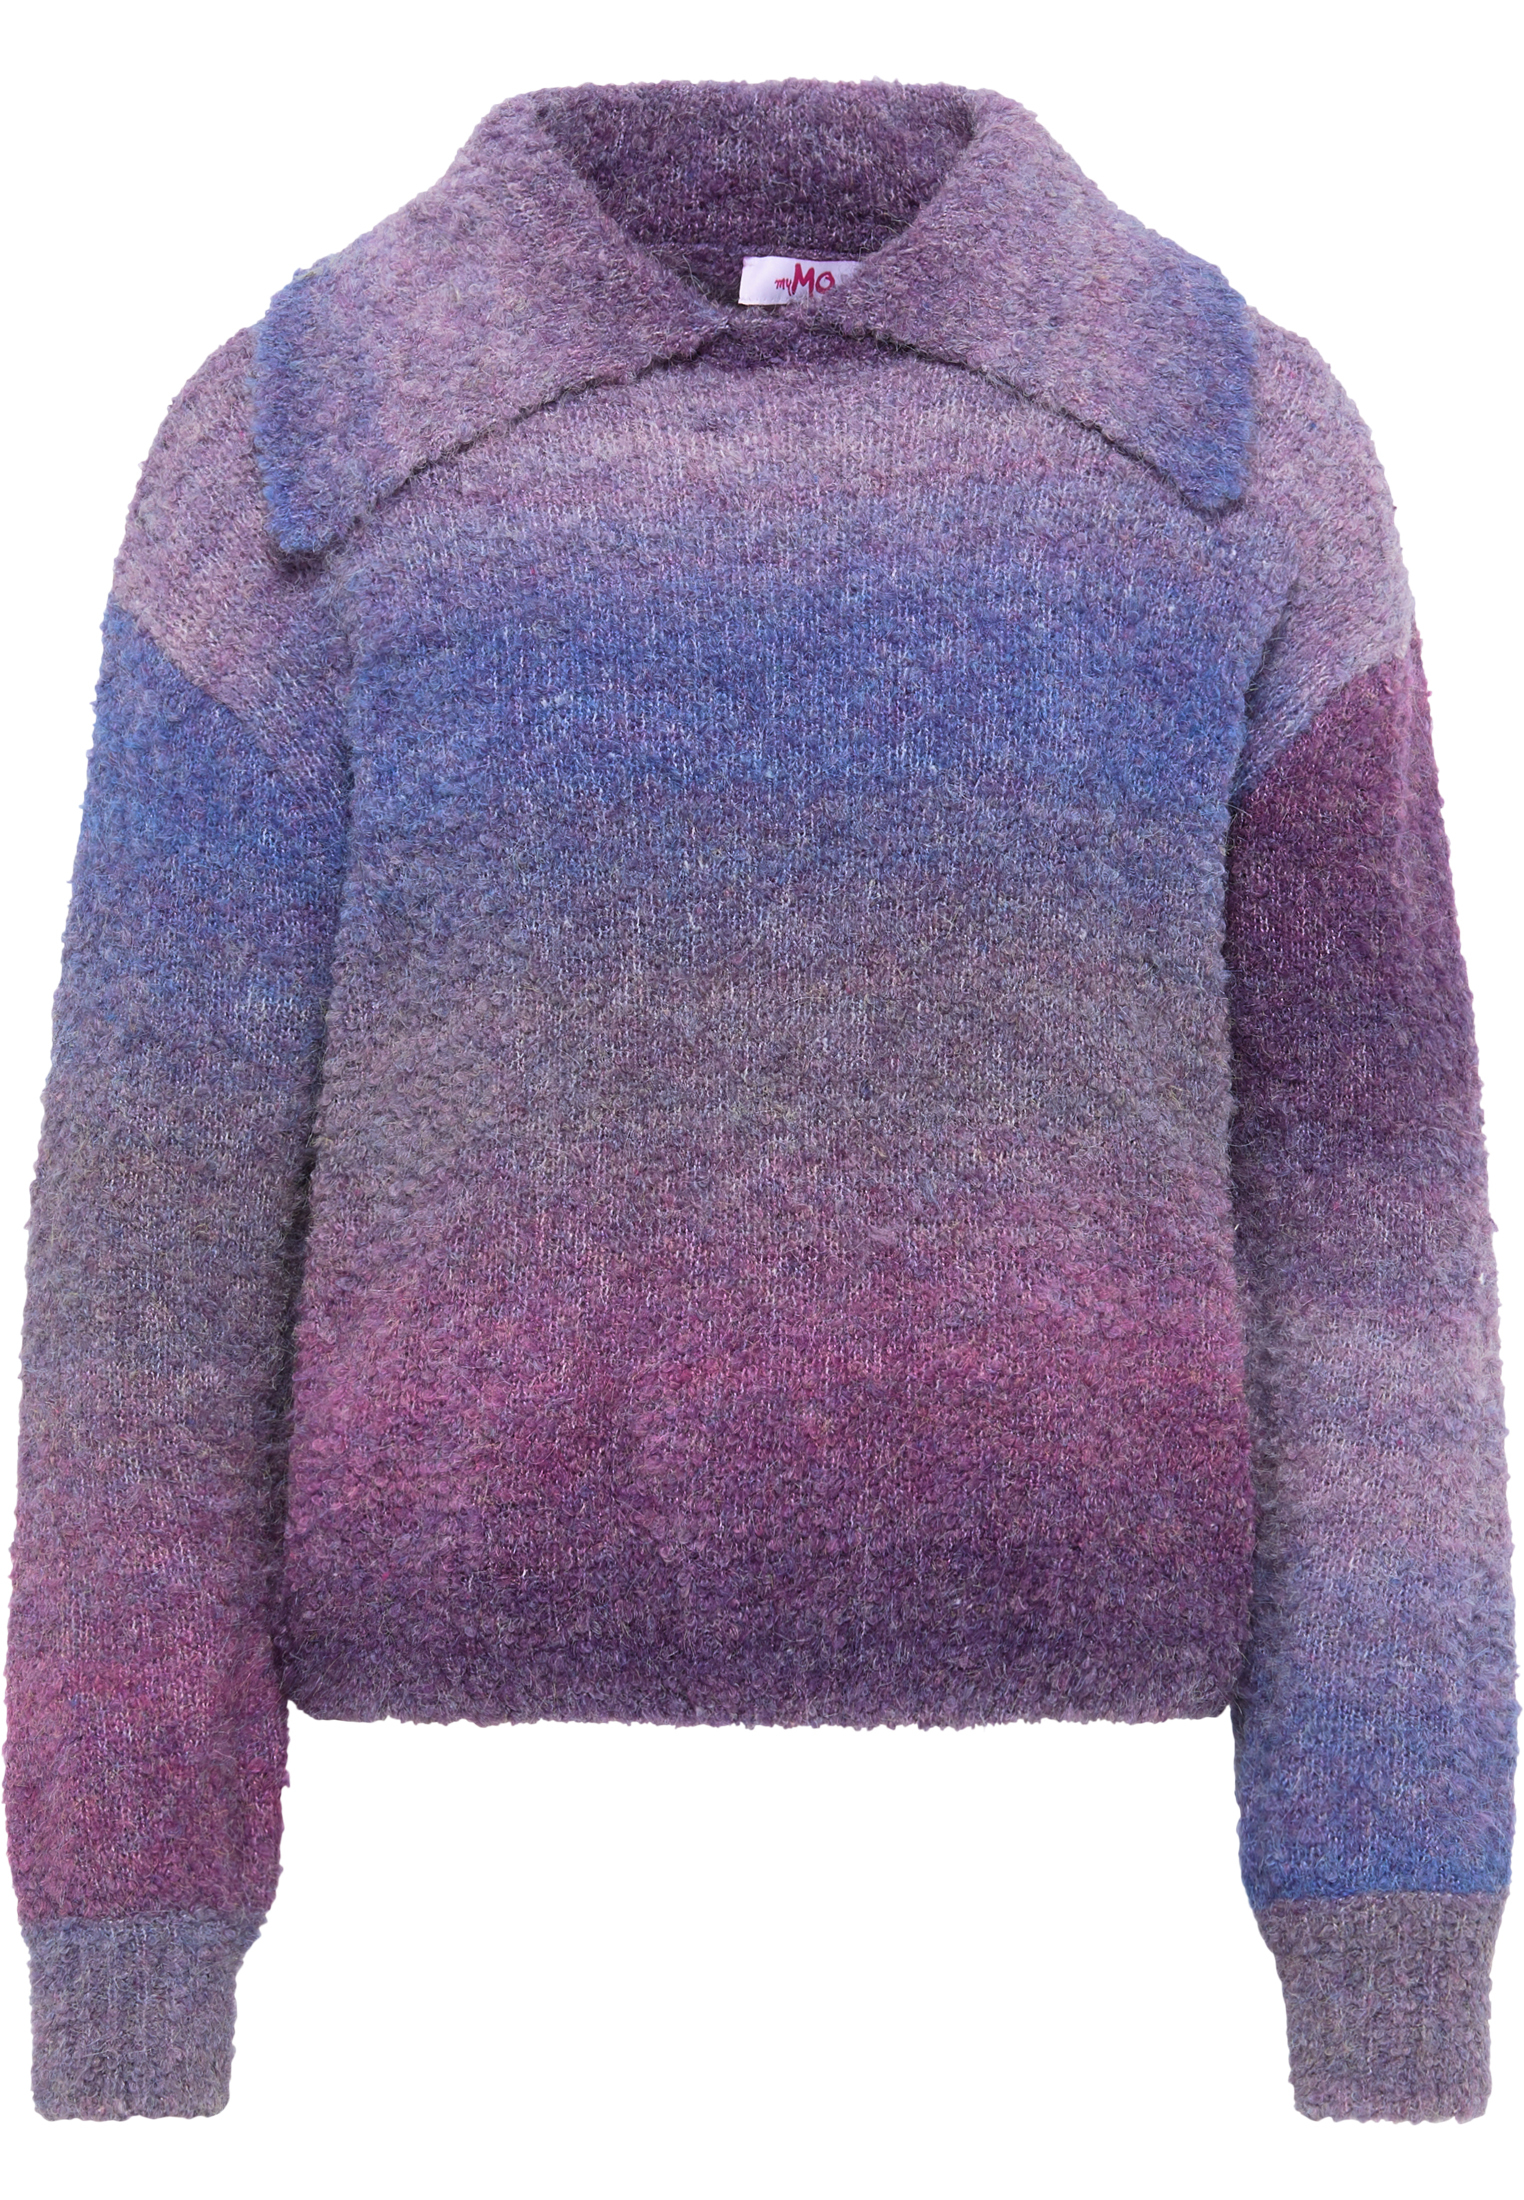 Odzież Kobiety MYMO Sweter w kolorze Ciemnofioletowy, Fioletowym 